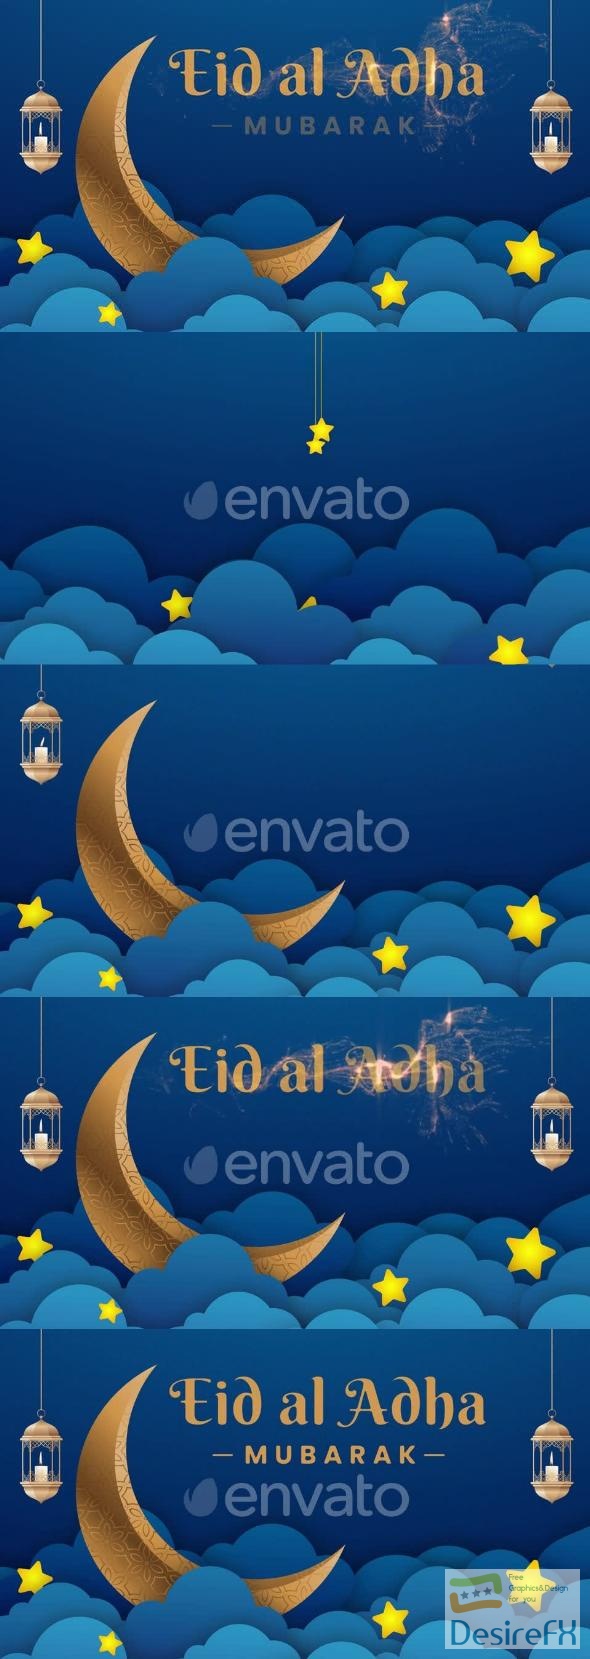 VideoHive Eid Al Adha Mubarak Animated Greeting 44715959